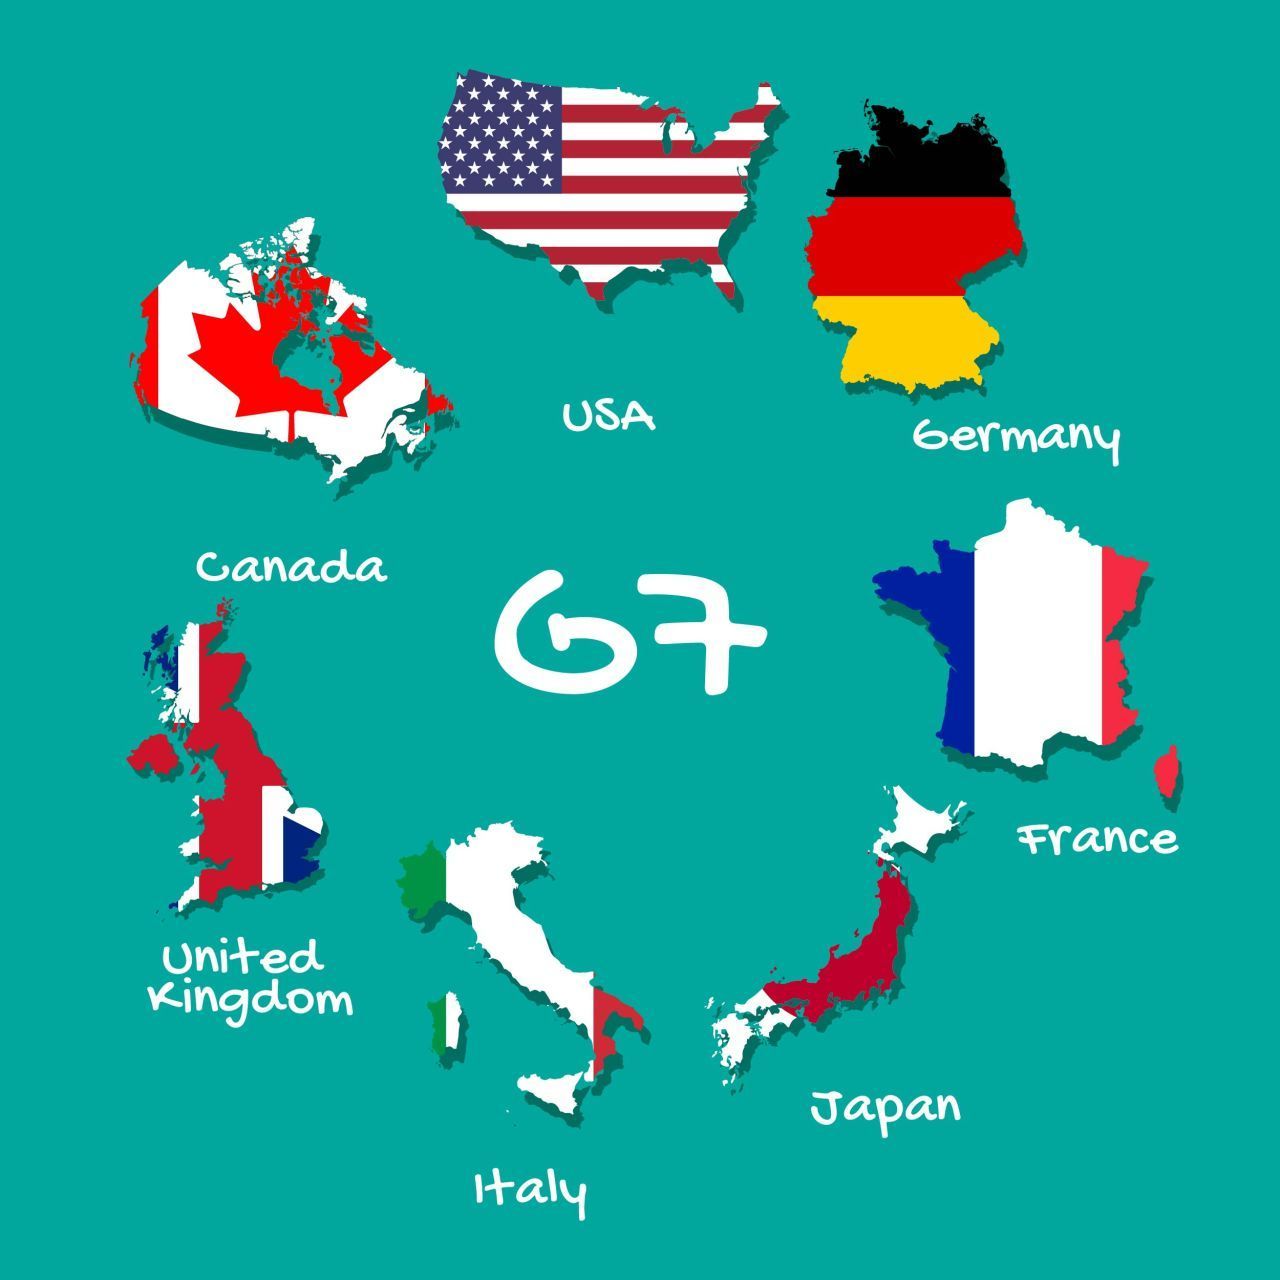 Zu den G7 gehören nur die führenden Industrieländer der Welt. Aufgrund ihrer wirtschaftlichen Macht spielen sie auch für die Weltpolitik eine zentrale Rolle.